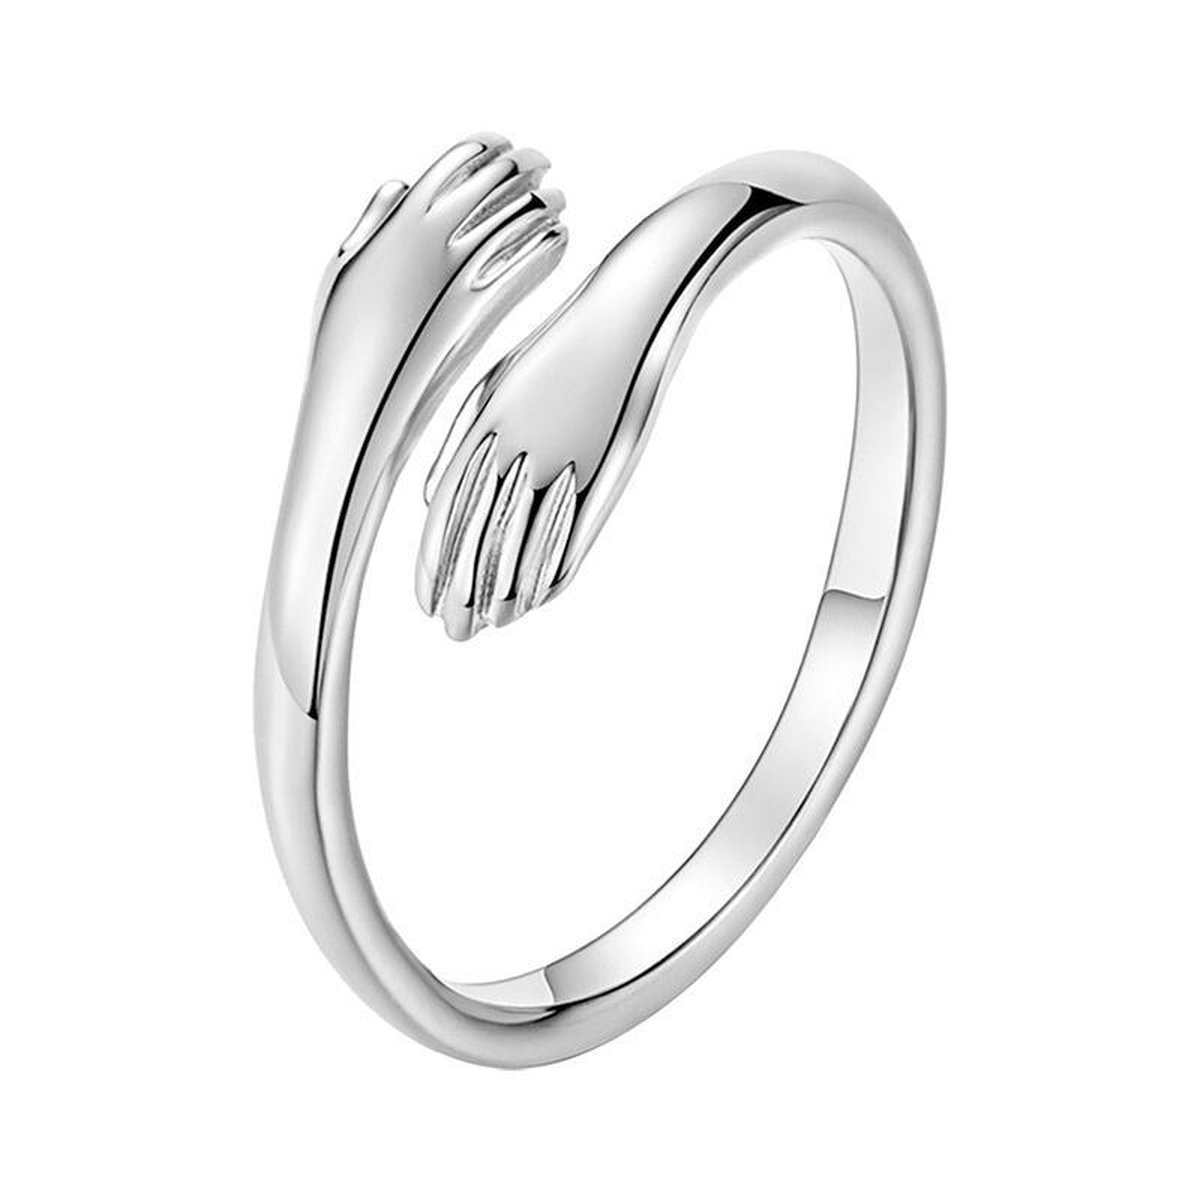 24/7 Jewelry Collection Knuffel Ring - Knuffelring - Handen - Handjes - Vriendschapsring - Hug - Verstelbaar - Verstelbare Ring - Zilverkleurig - Amodi